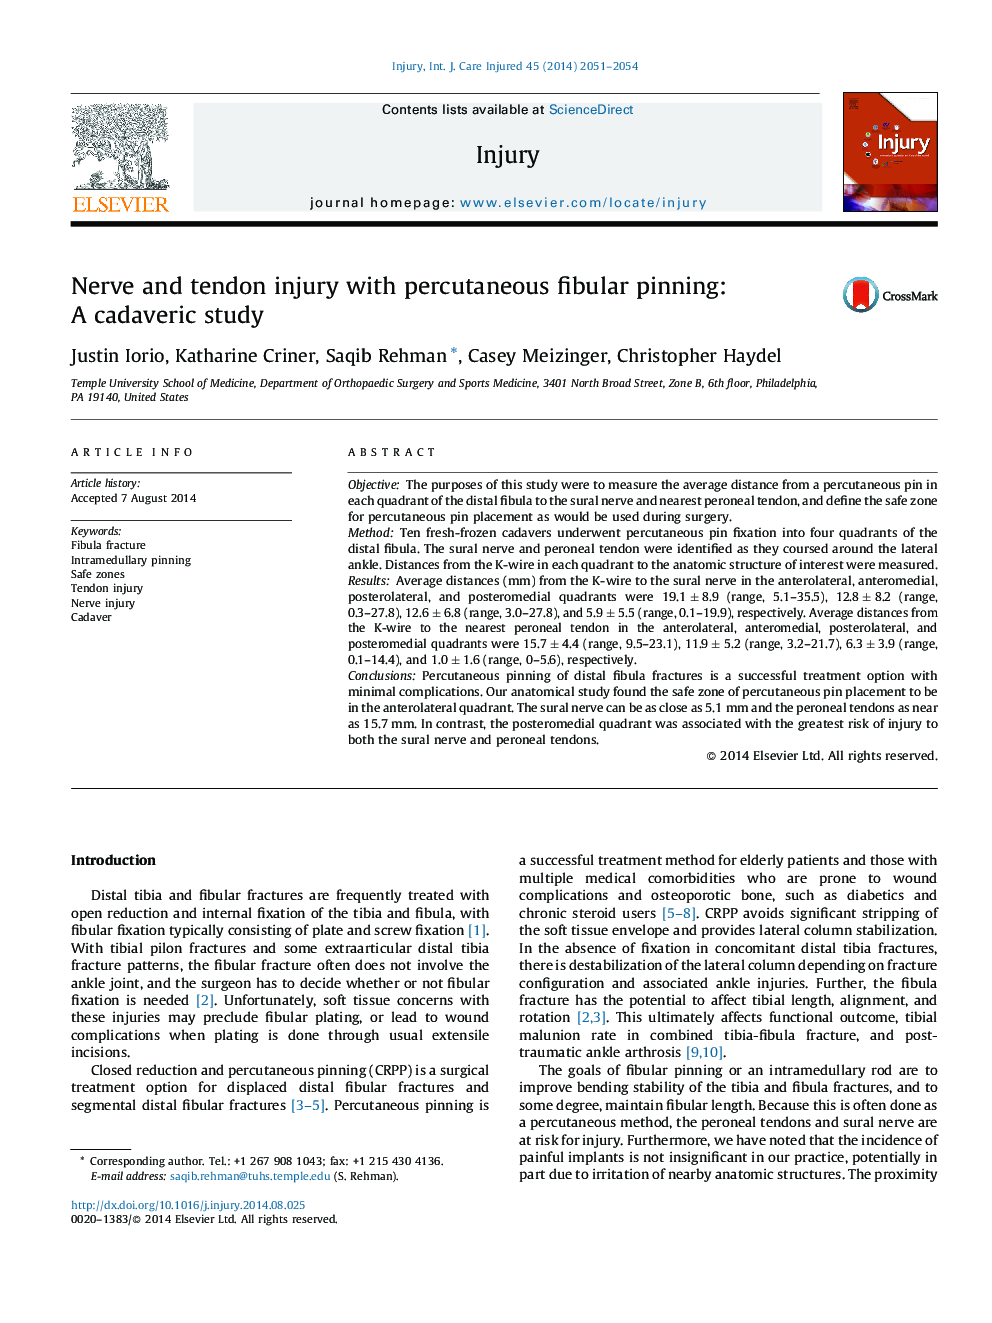 آسیب عصبی و تاندون با پریشی فیبالی پوستی: یک مطالعه کاداوریک 